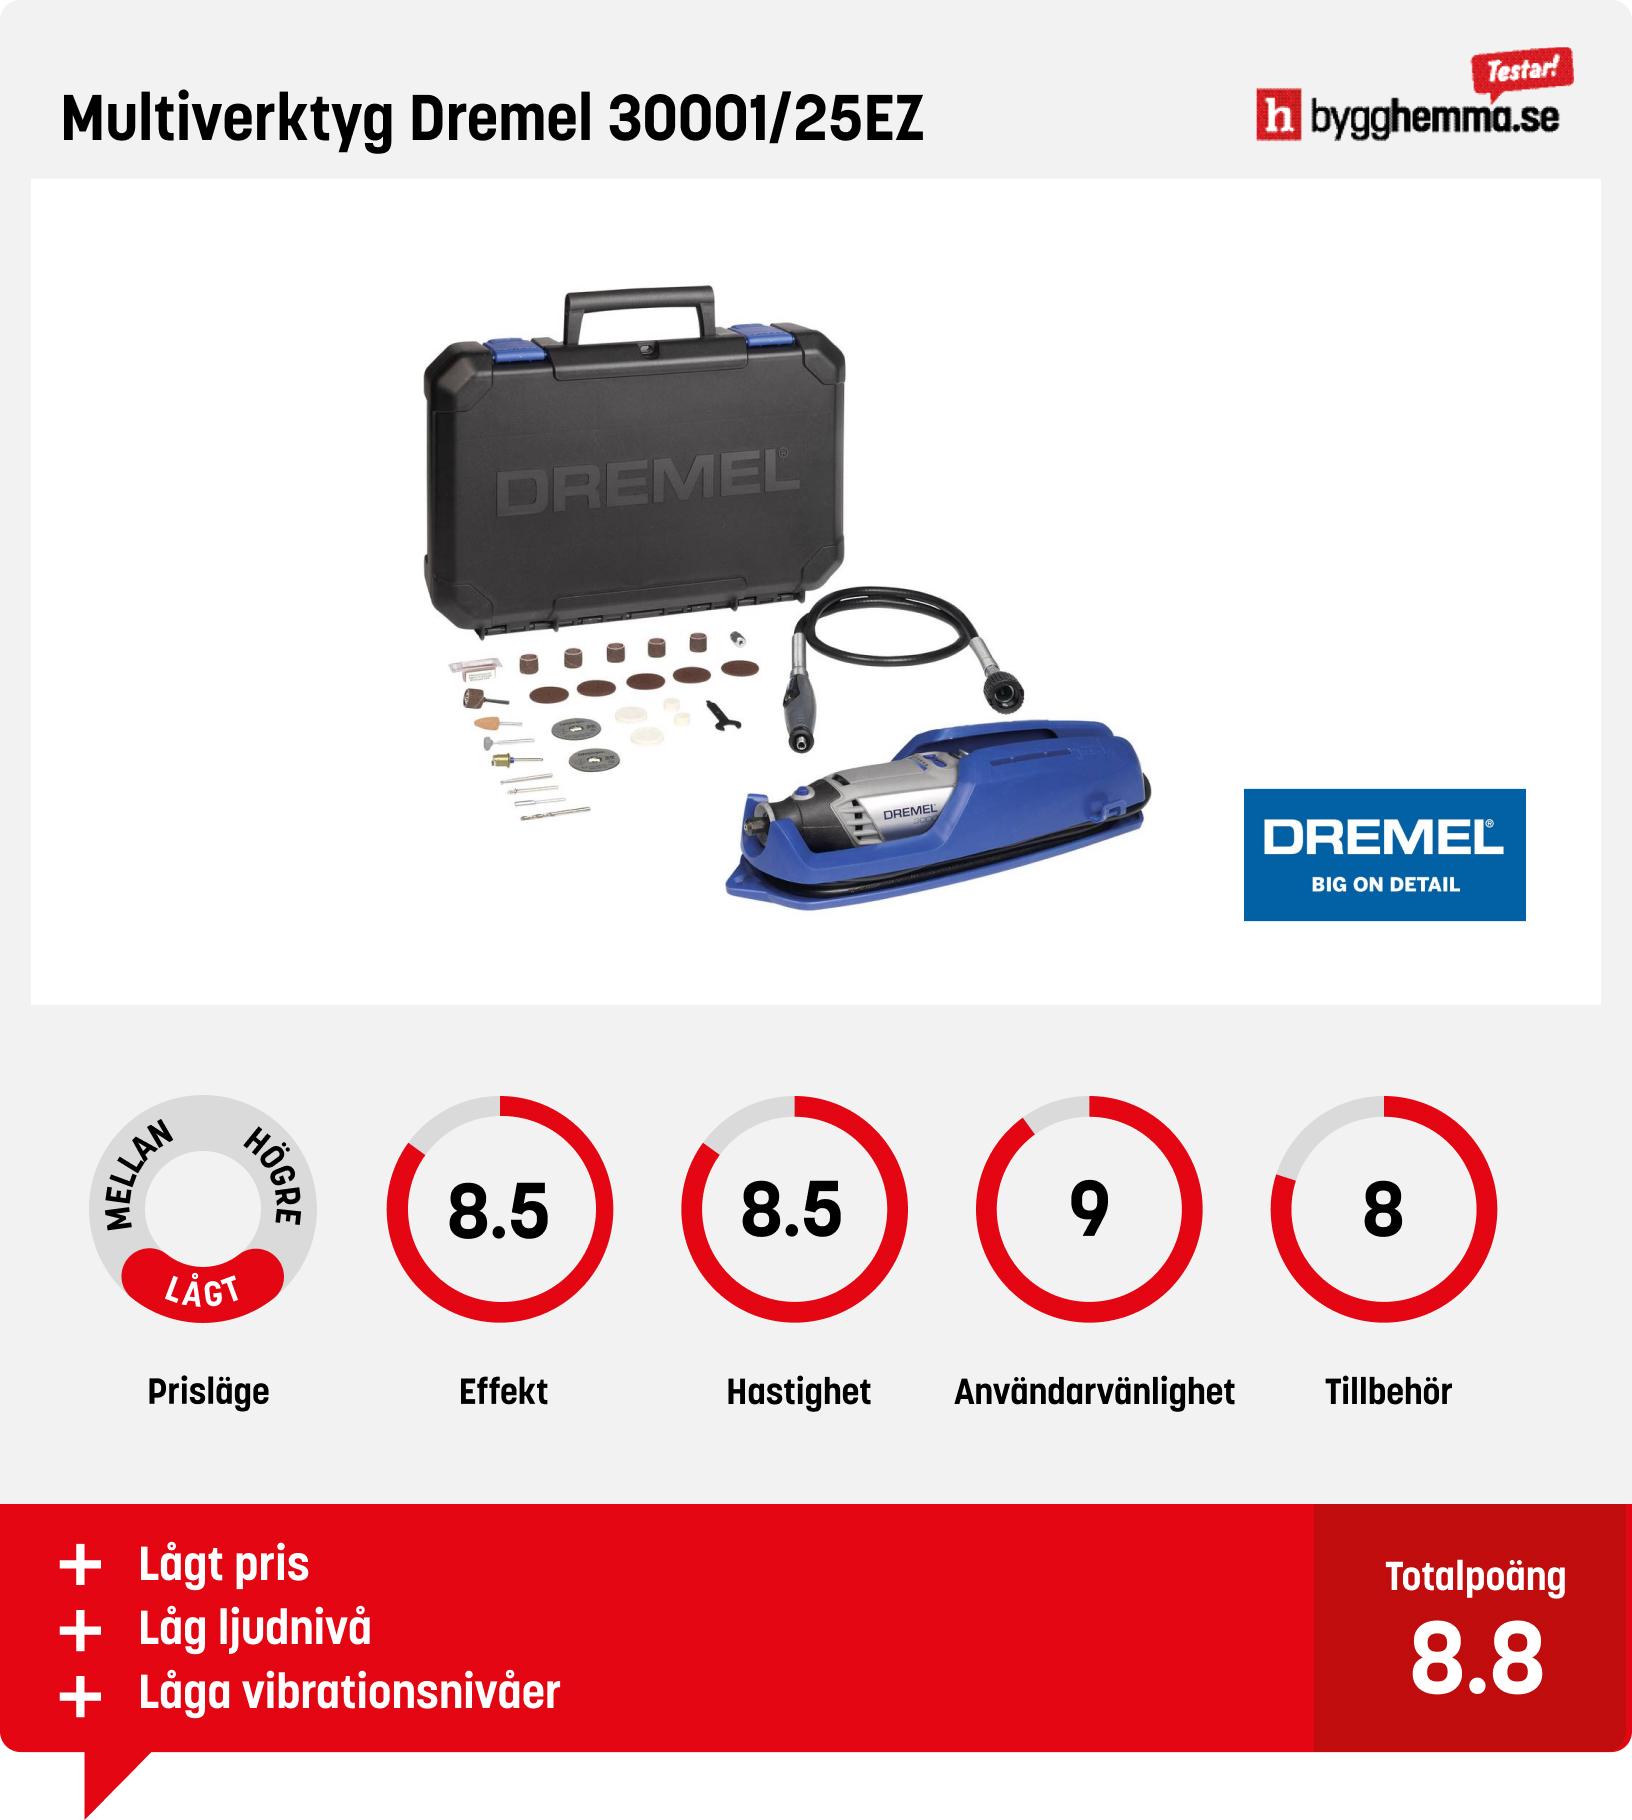 Multiverktyg test - Multiverktyg Dremel 30001/25EZ